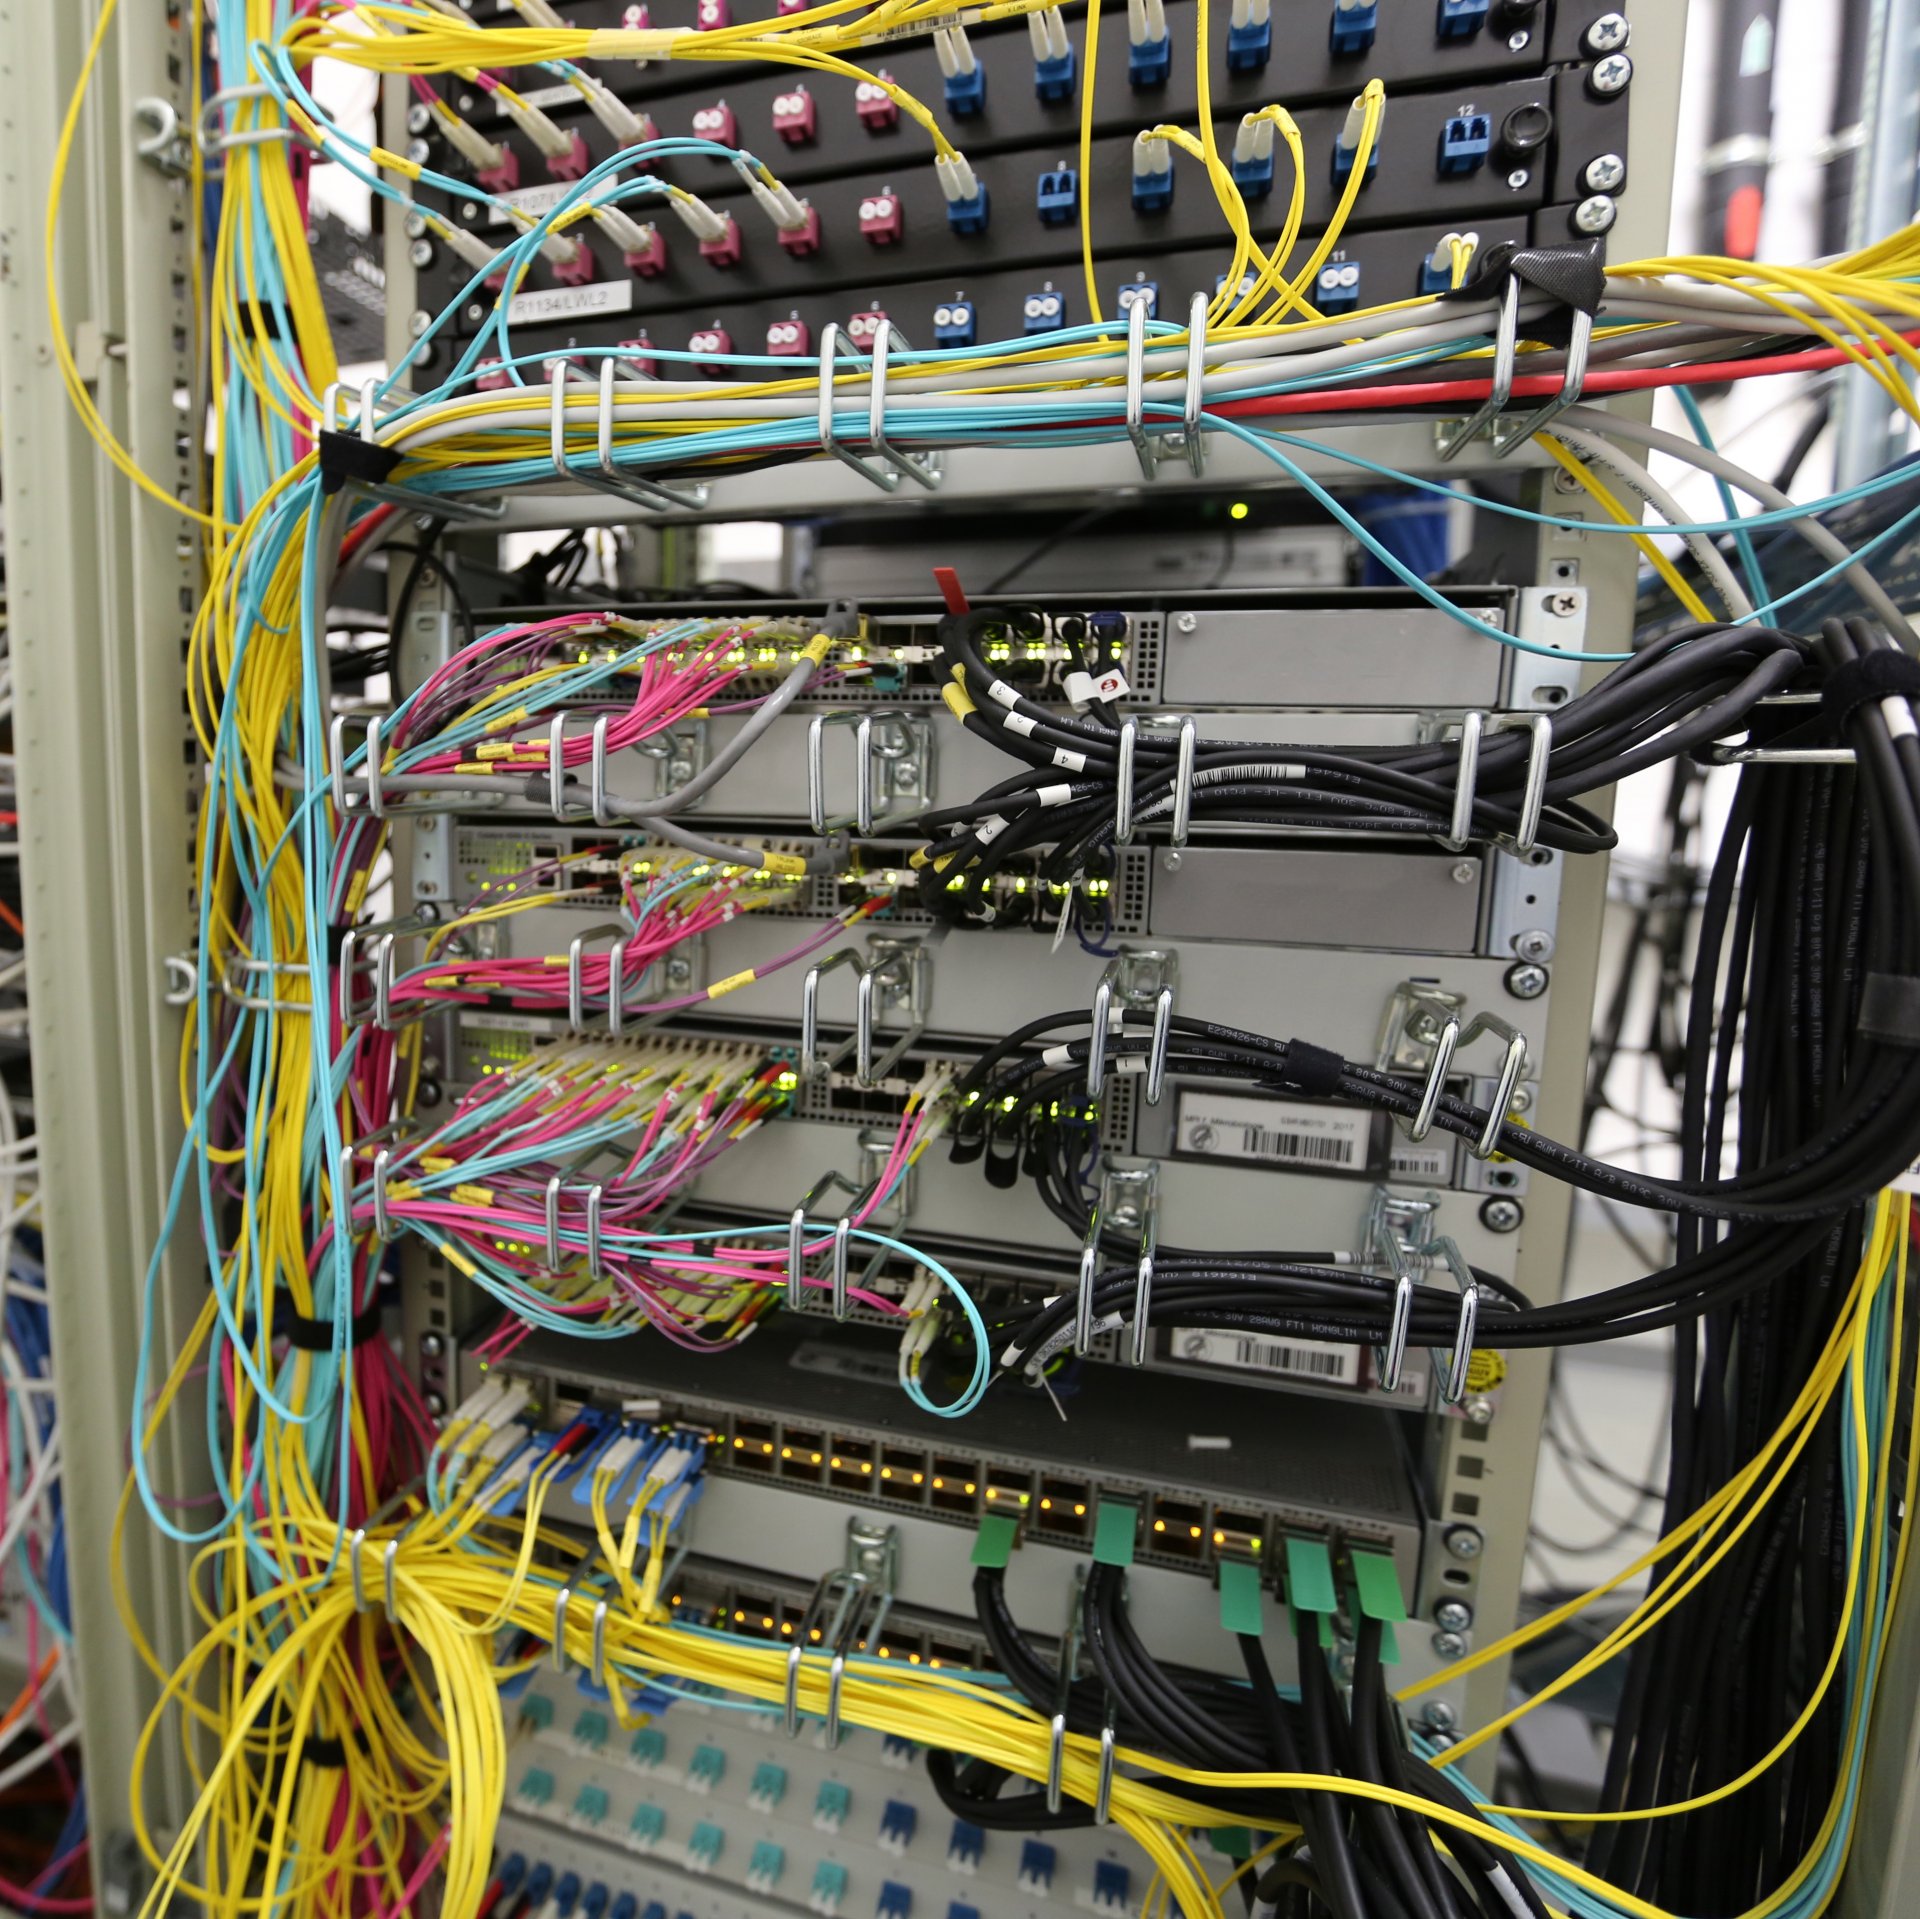 Viele Kabel verbinden die Computer miteinander. © Max-Planck-Institut für Marine Mikrobiologie/F. Aspetsberger